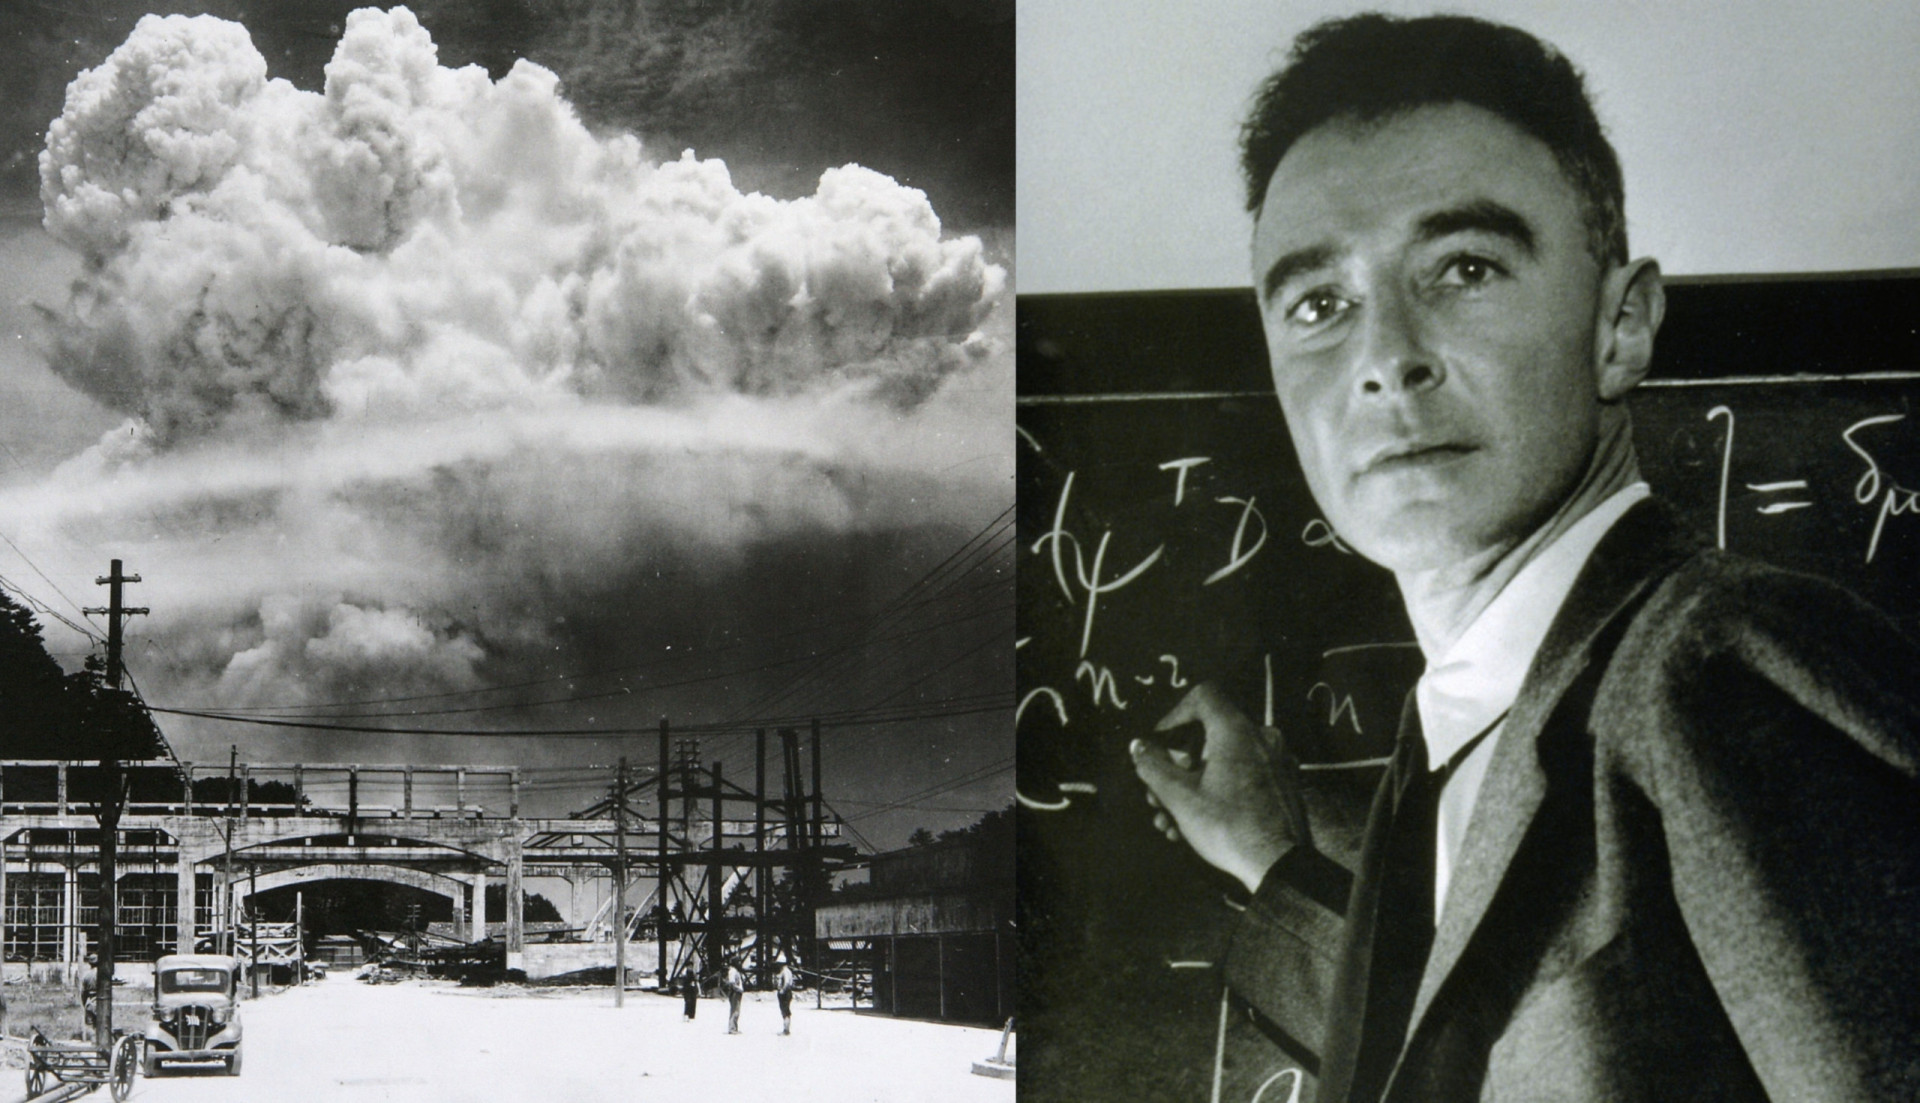 <p>Mit dem Kinostart von Christopher Nolans "Oppenheimer" ist zweifellos die Neugier der Menschen auf den "Vater der Atombombe" geweckt worden. J. Robert Oppenheimer war bekannt für die Entwicklung der ersten Atomwaffe während des Zweiten Weltkriegs. Der theoretische Physiker war Direktor des geheimen Los Alamos National Laboratory des <a href="https://de.starsinsider.com/lifestyle/529437/das-manhattan-projekt-alles-ueber-den-bau-der-ersten-atombombe" rel="noopener">Manhattan-Projekts</a>, in dem die Atombomben entwickelt wurden, die schätzungsweise 100.000 bis 200.000 Menschen in Hiroshima und Nagasaki in Japan töteten.</p> <p>Sie wollen mehr über Oppenheimer erfahren? Dann klicken Sie sich durch diese Galerie und erfahren Sie, was Sie vielleicht noch nicht über den berüchtigten Physiker wussten.</p><p>Sie können auch mögen:<a href="https://de.starsinsider.com/n/183270?utm_source=msn.com&utm_medium=display&utm_campaign=referral_description&utm_content=560638"> Spektakuläre Seen dieser Erde</a></p>